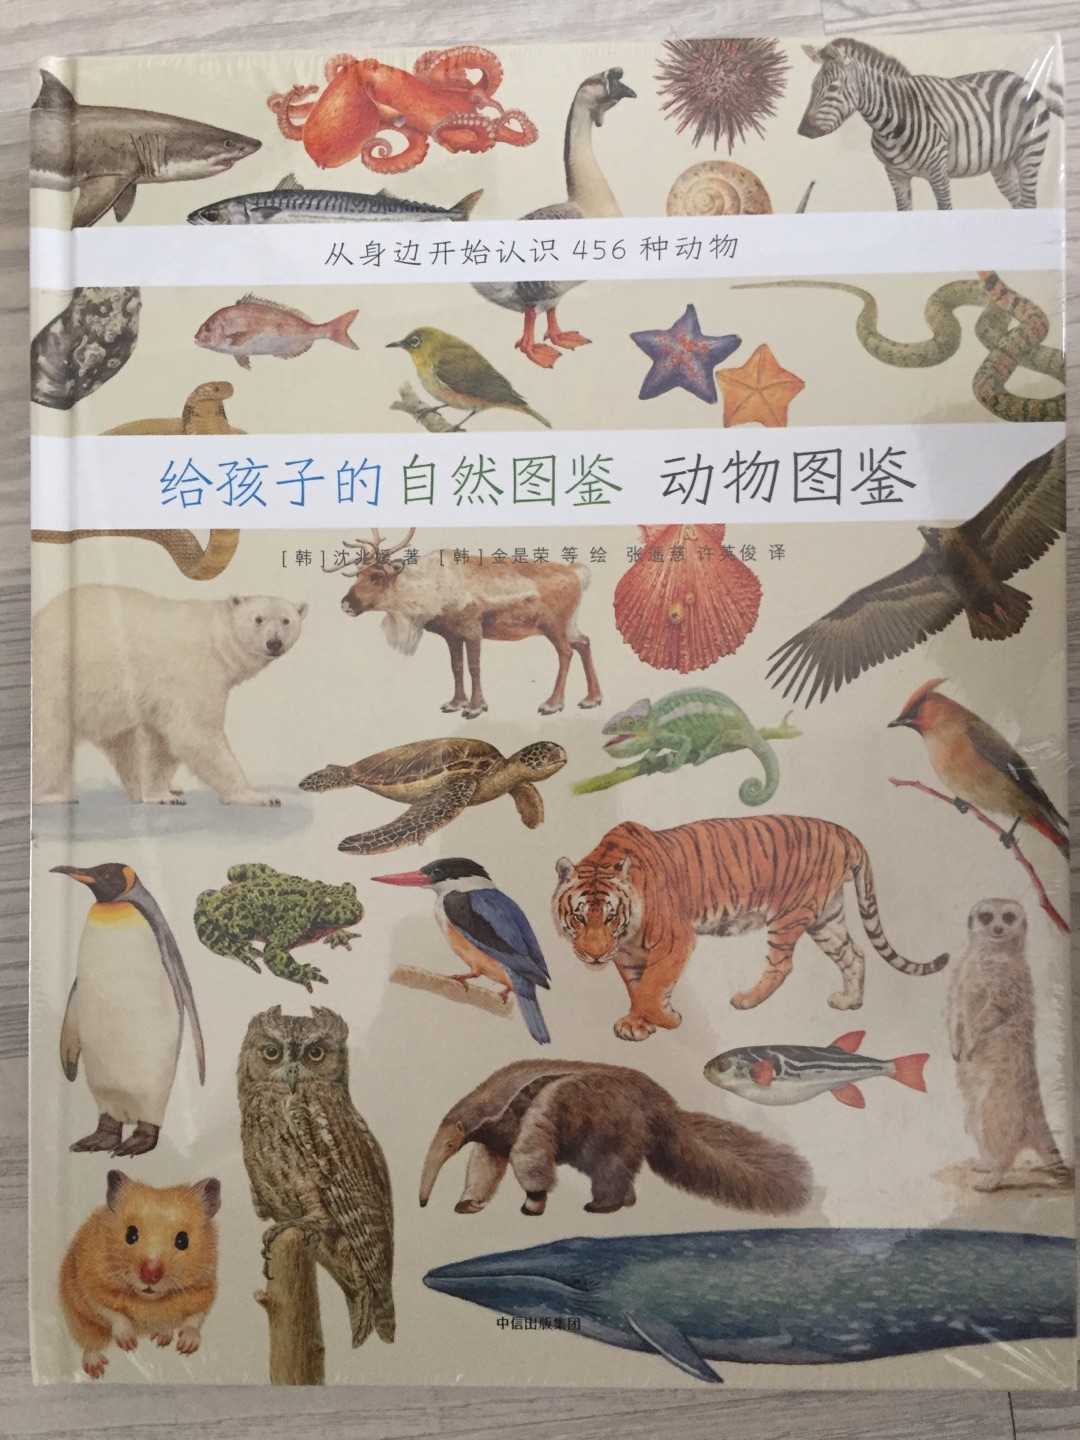 书真是好书！印刷质量很好，很有质感。书中的图片画的非常真实，特别适合孩子认识动物。好评。